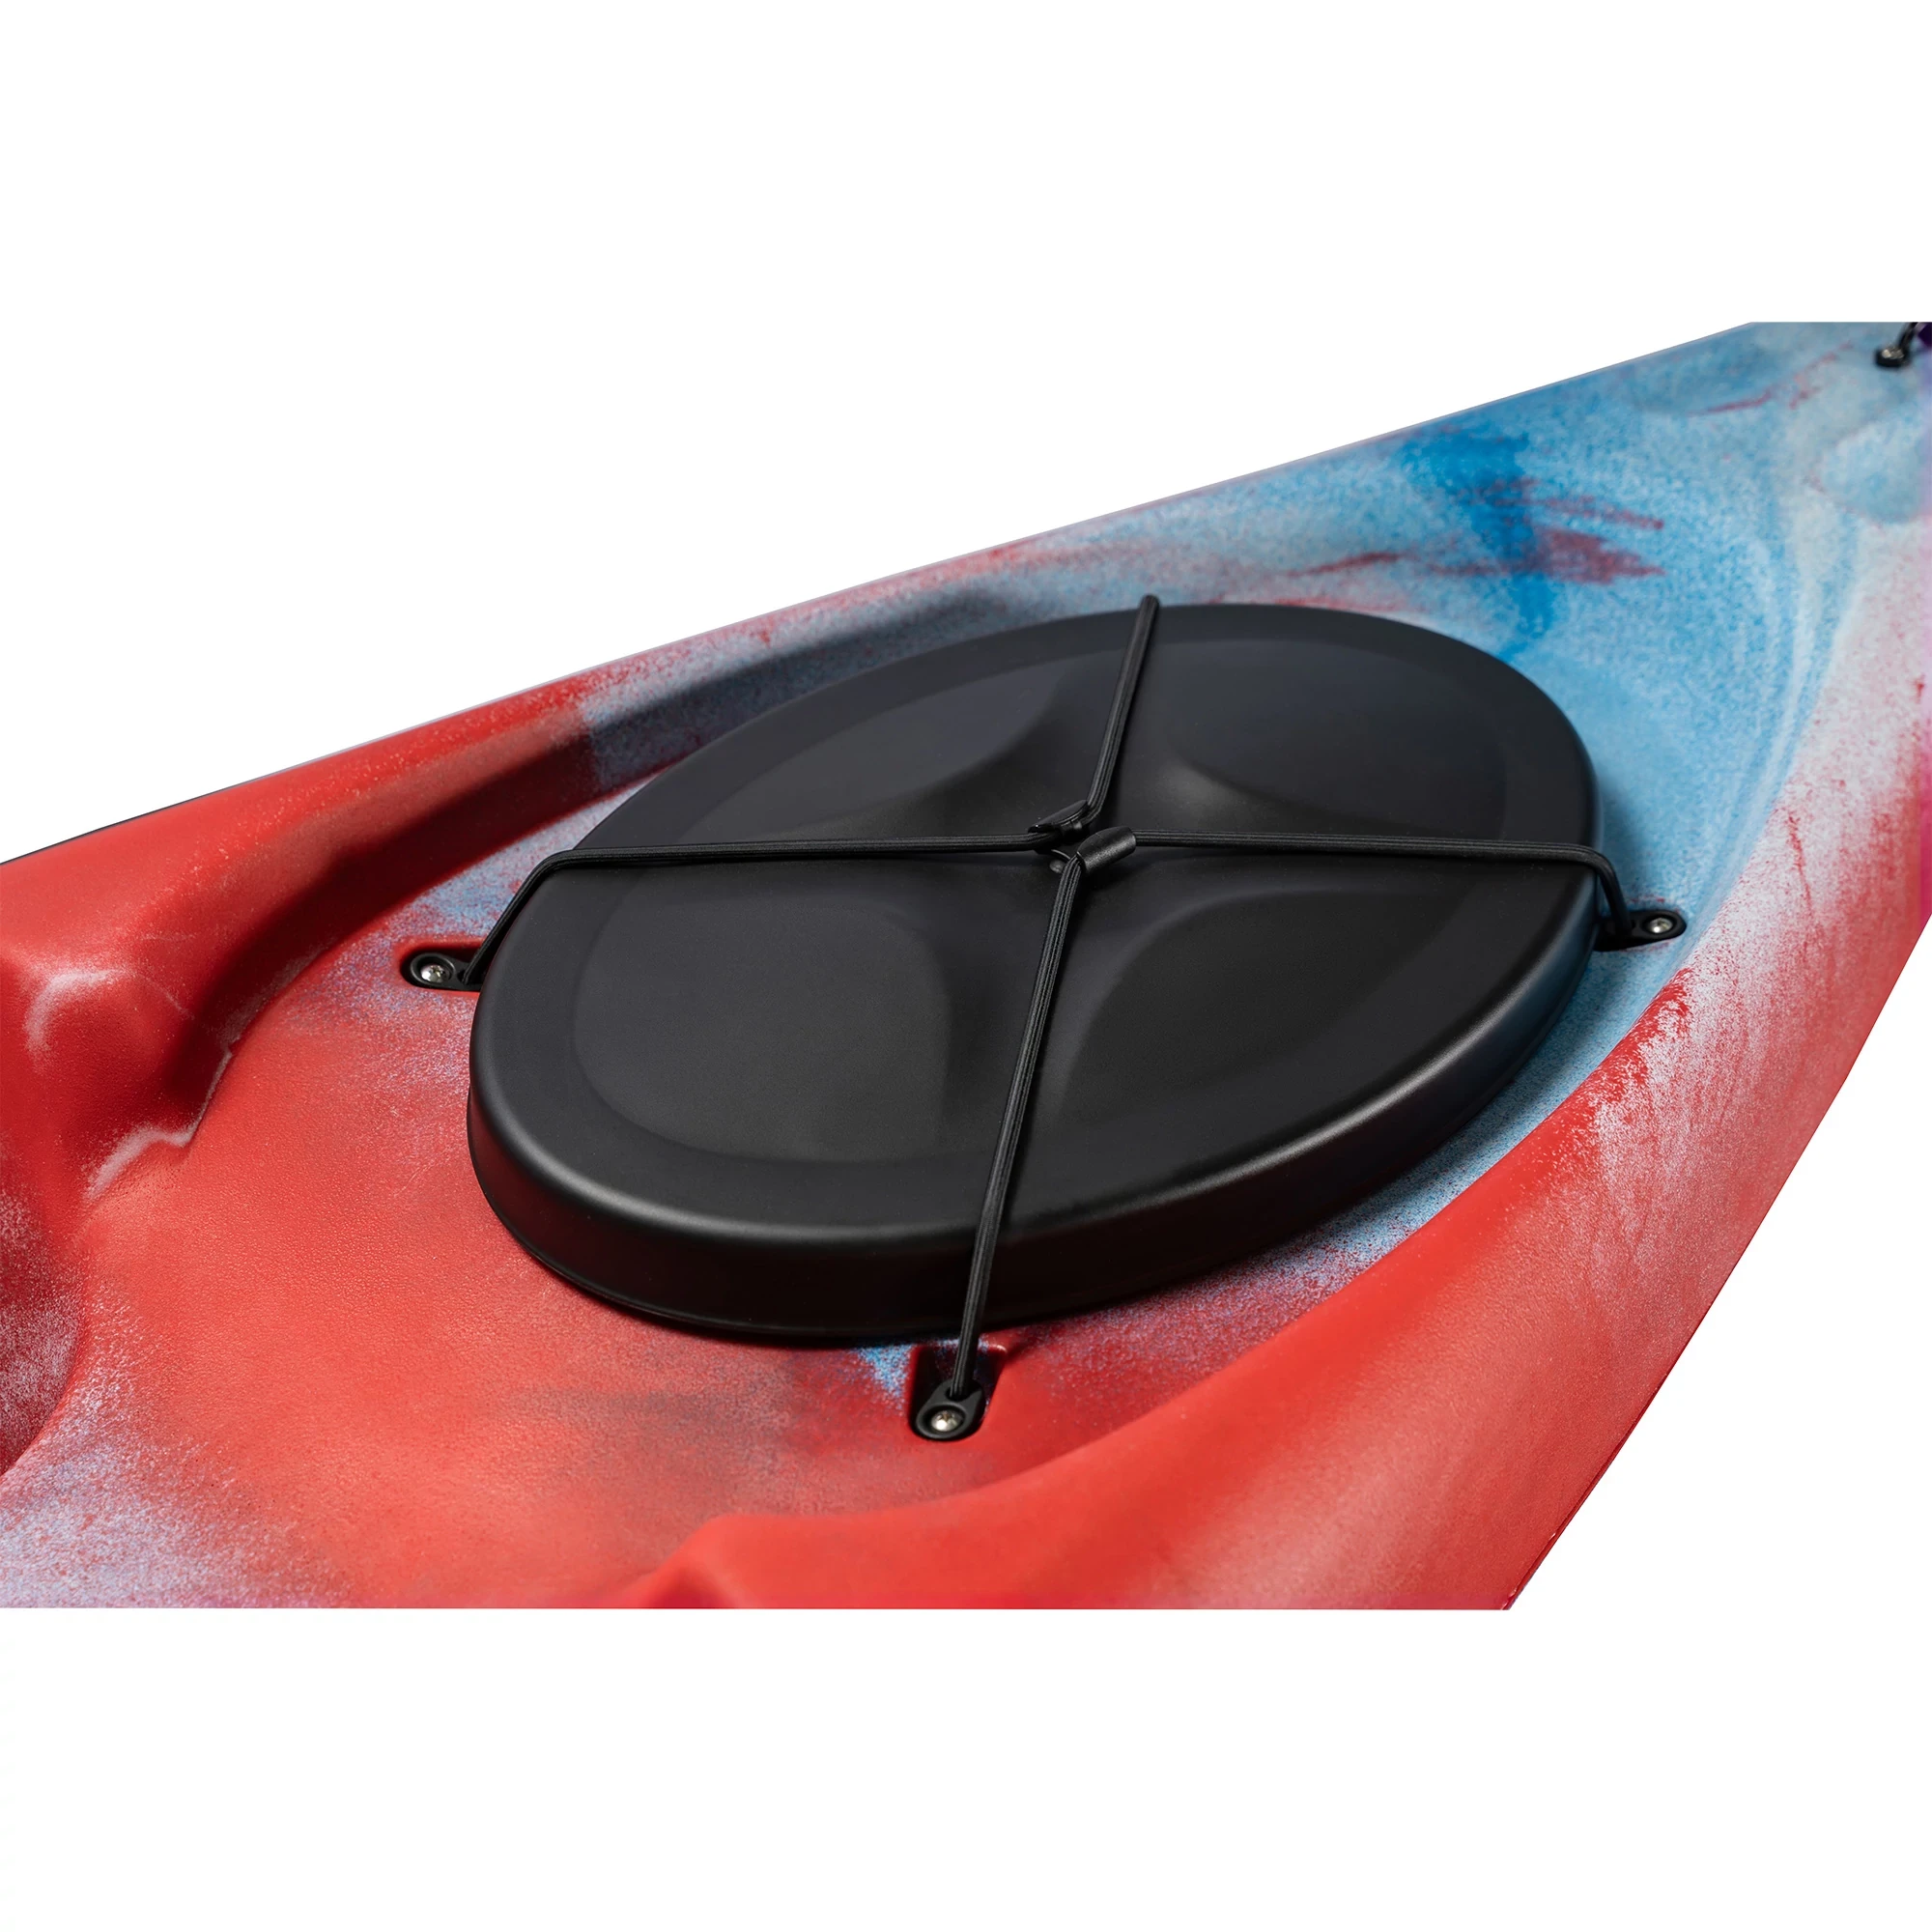 Ocean Kayak Caper Old Glory